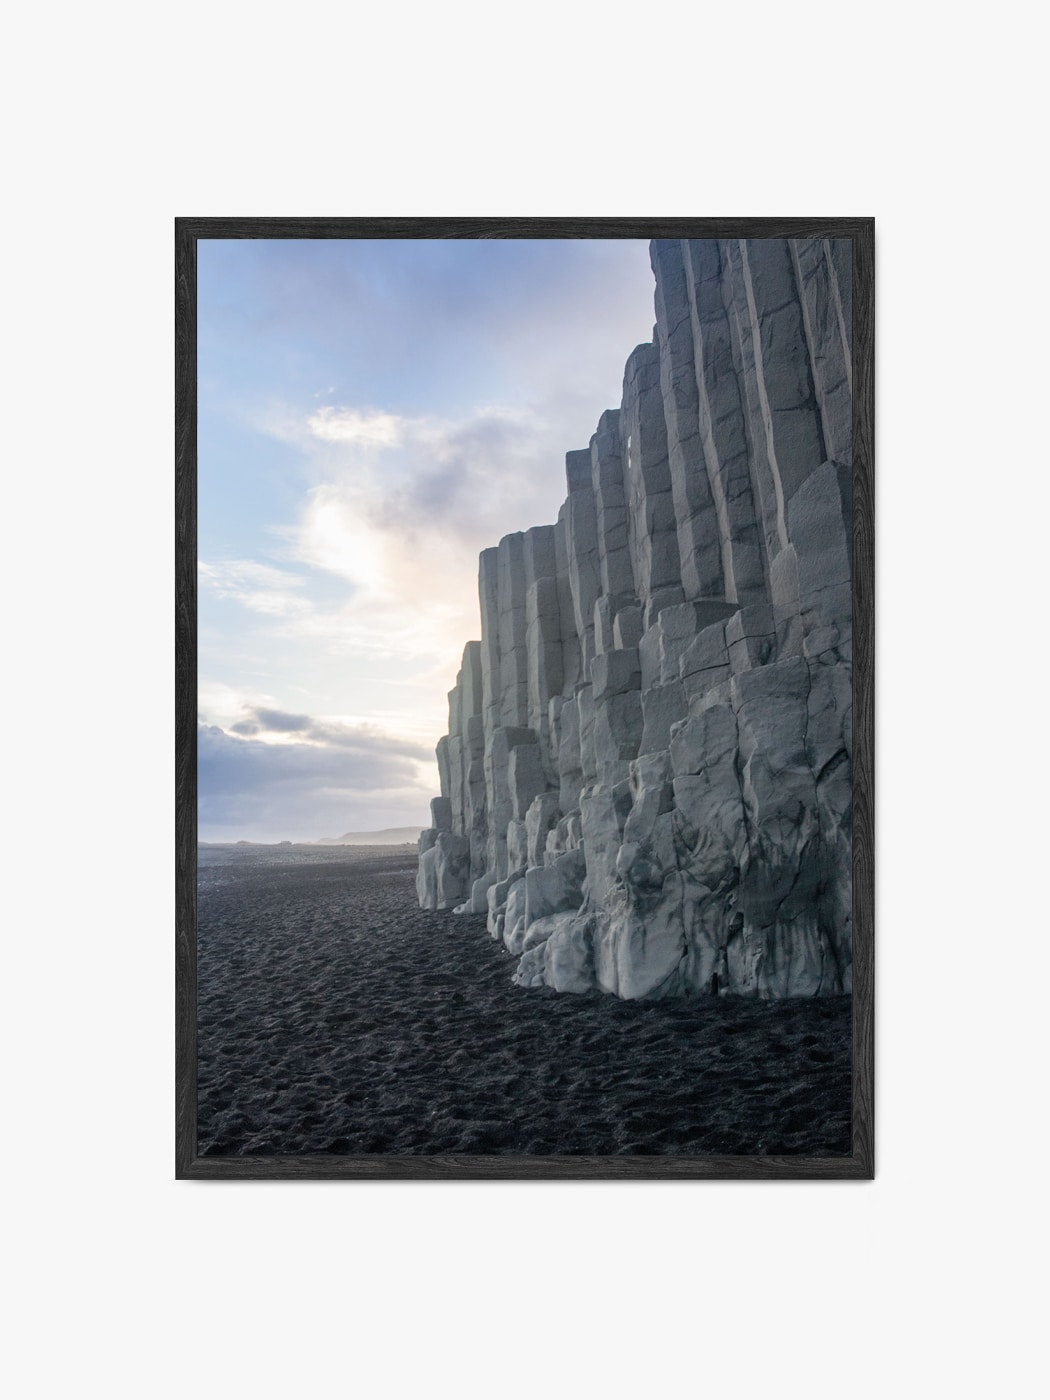 Obraz akustyczny ze zdjęcia - Wapienne klify przy piaszczystej plaży - Mateusz Kotlarski